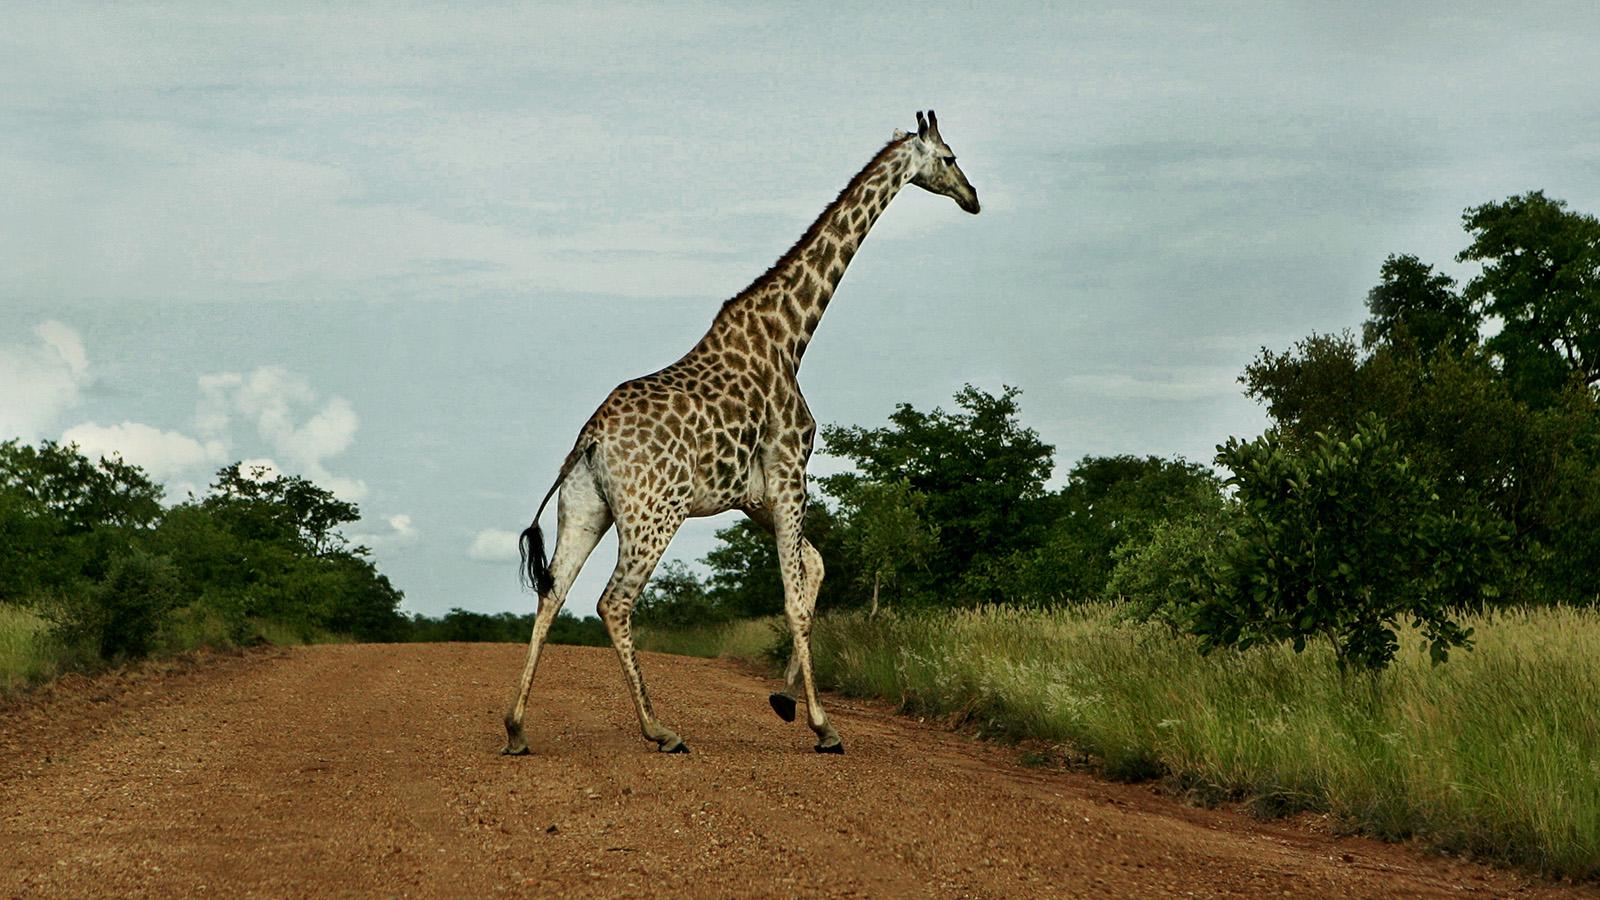 Det var under in filminspelning i Sydafrika som en giraff gick till attack (giraffen på bilden har ingenting med händelsen att göra)